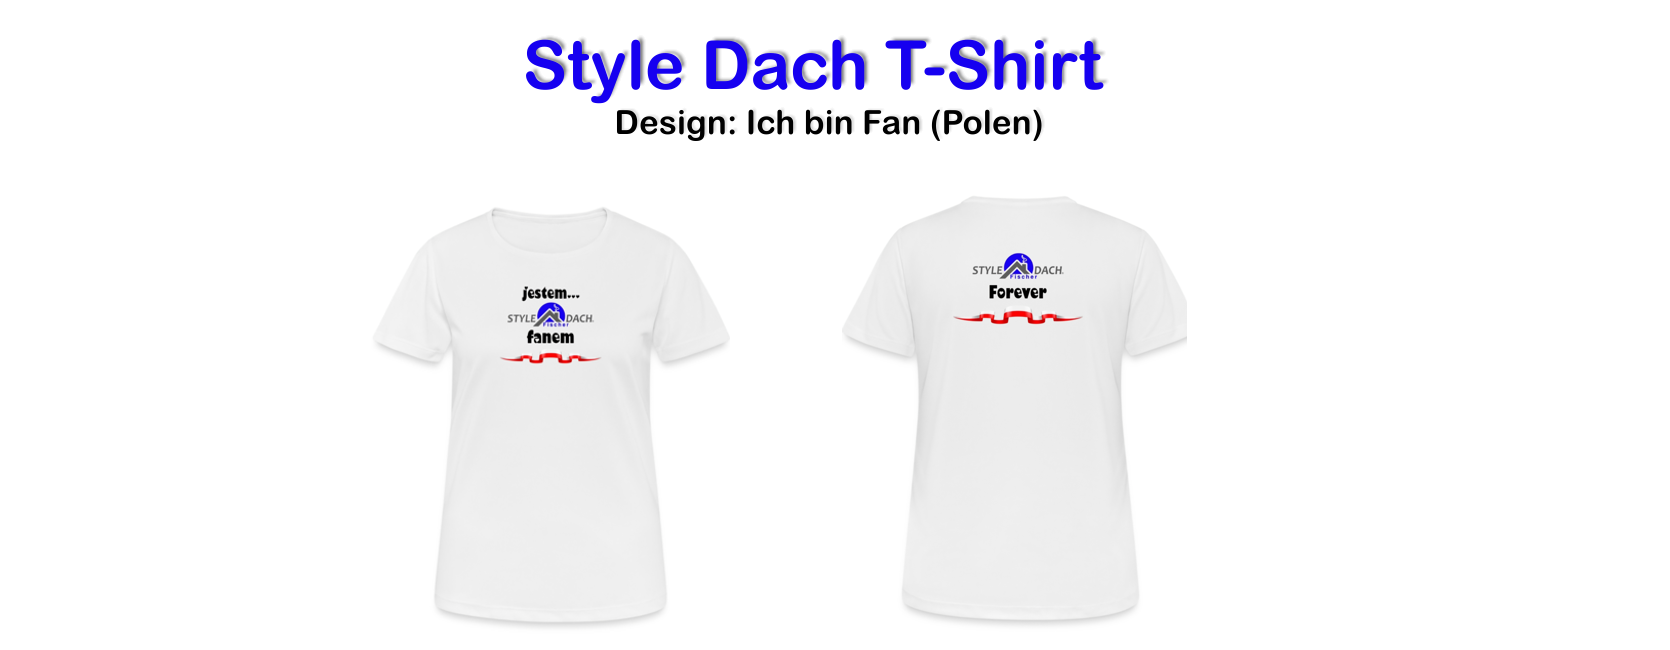 Tshirt für polnische Girls - Fan Shiert jestem fanem